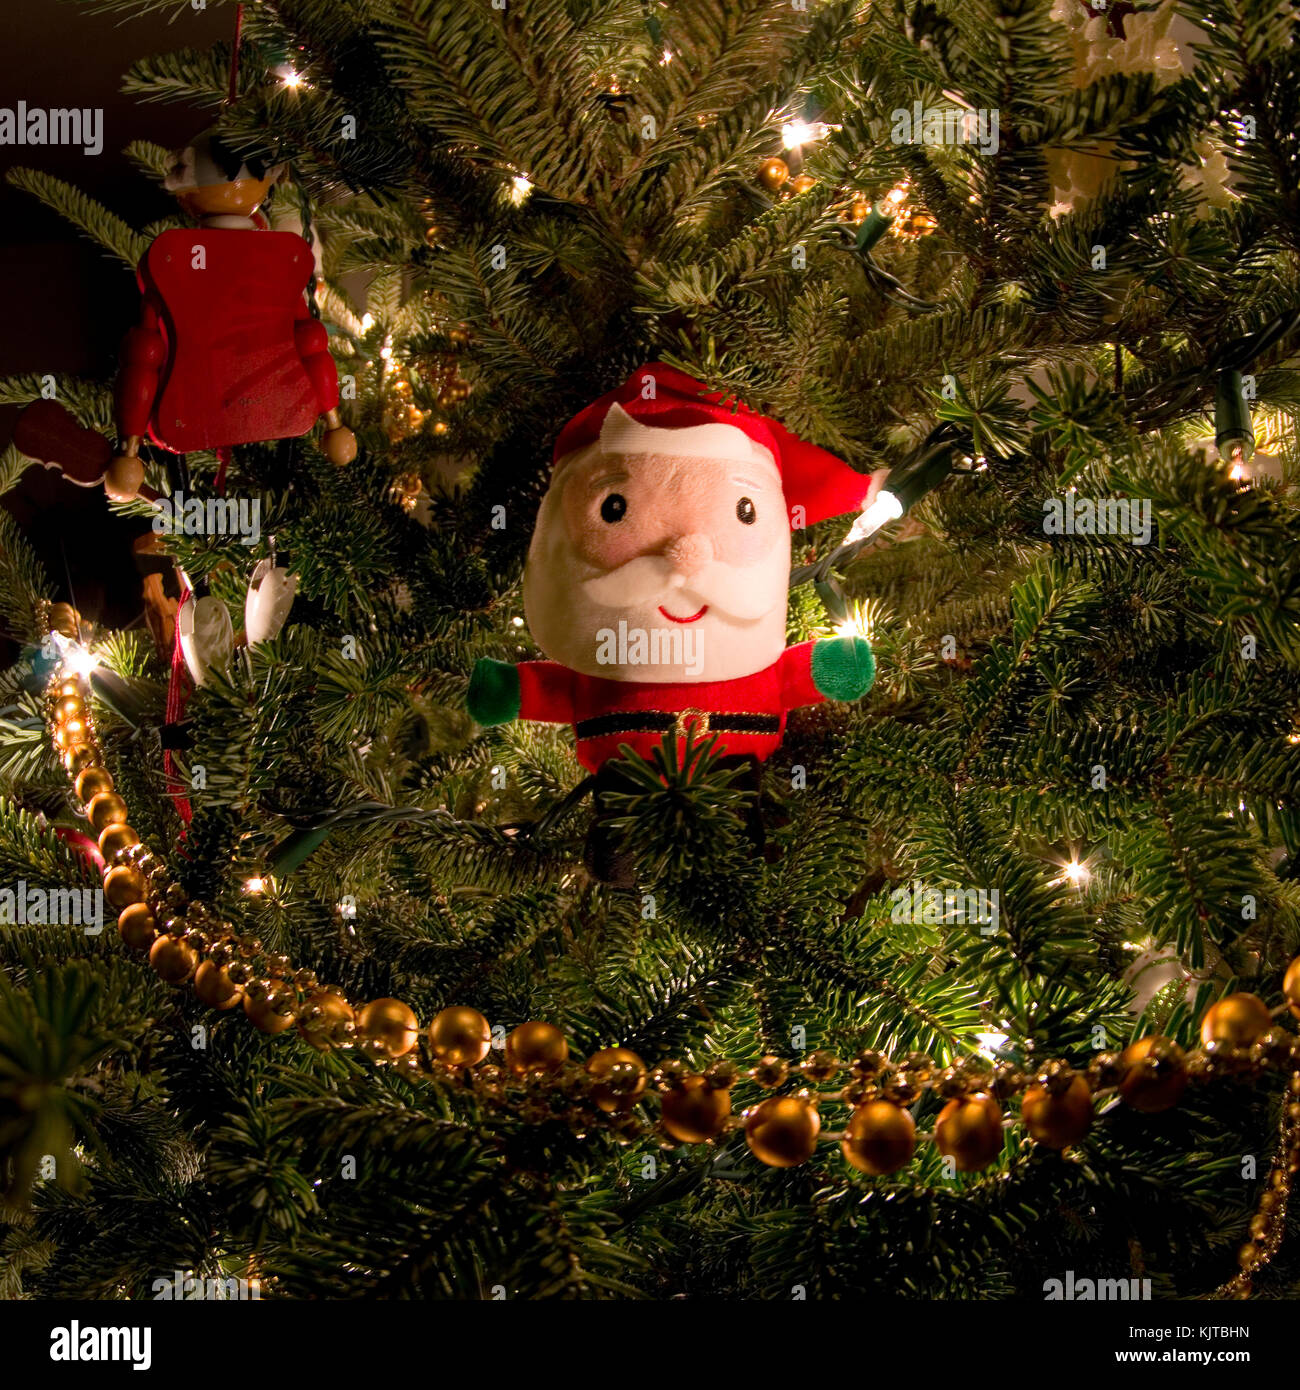 Santa ornament on tree Banque D'Images